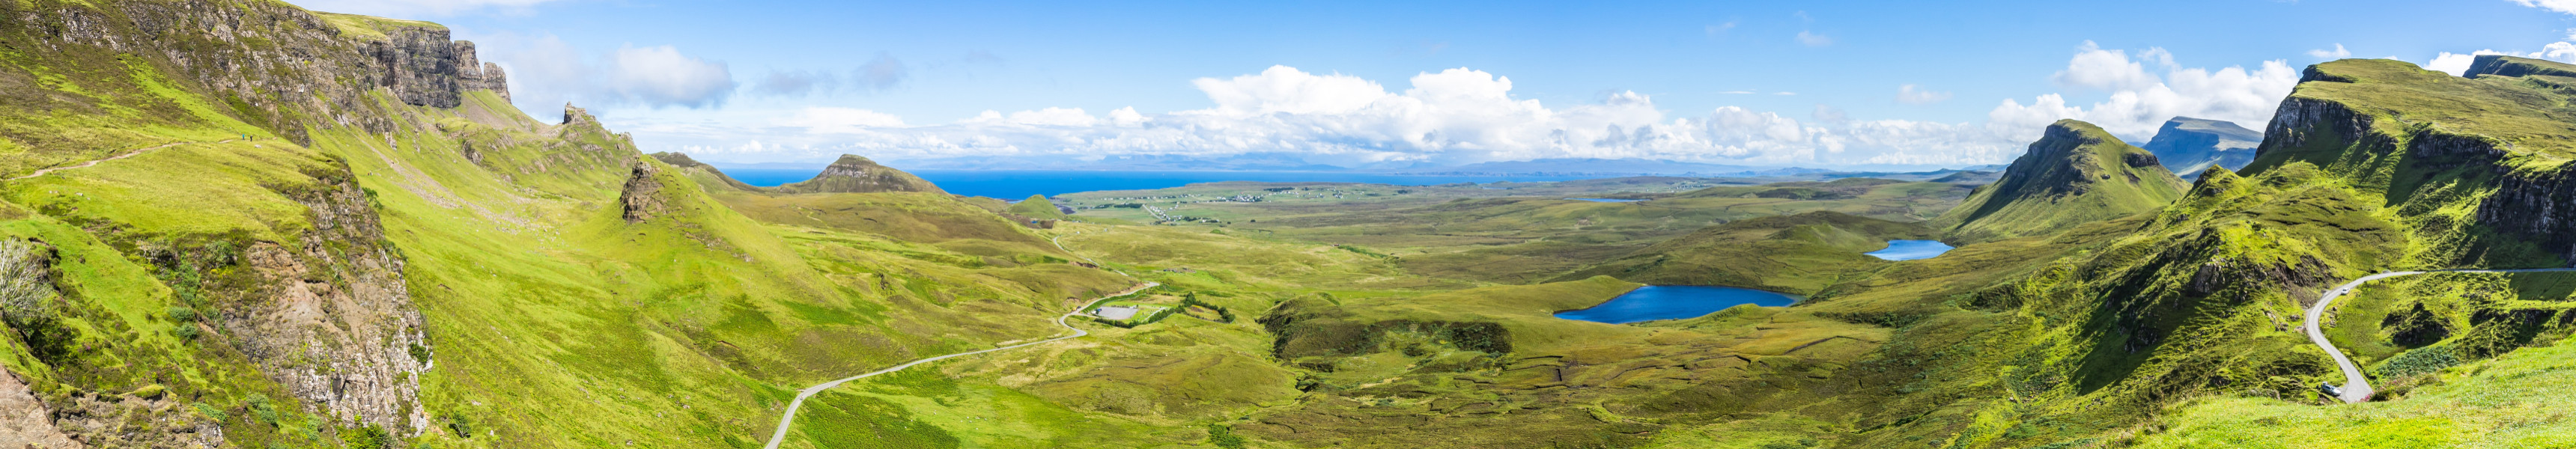 Weites Panorama von Quiraing, einer der berühmtesten Landschaften der Isle of Skye, Schottland, Großbritannien